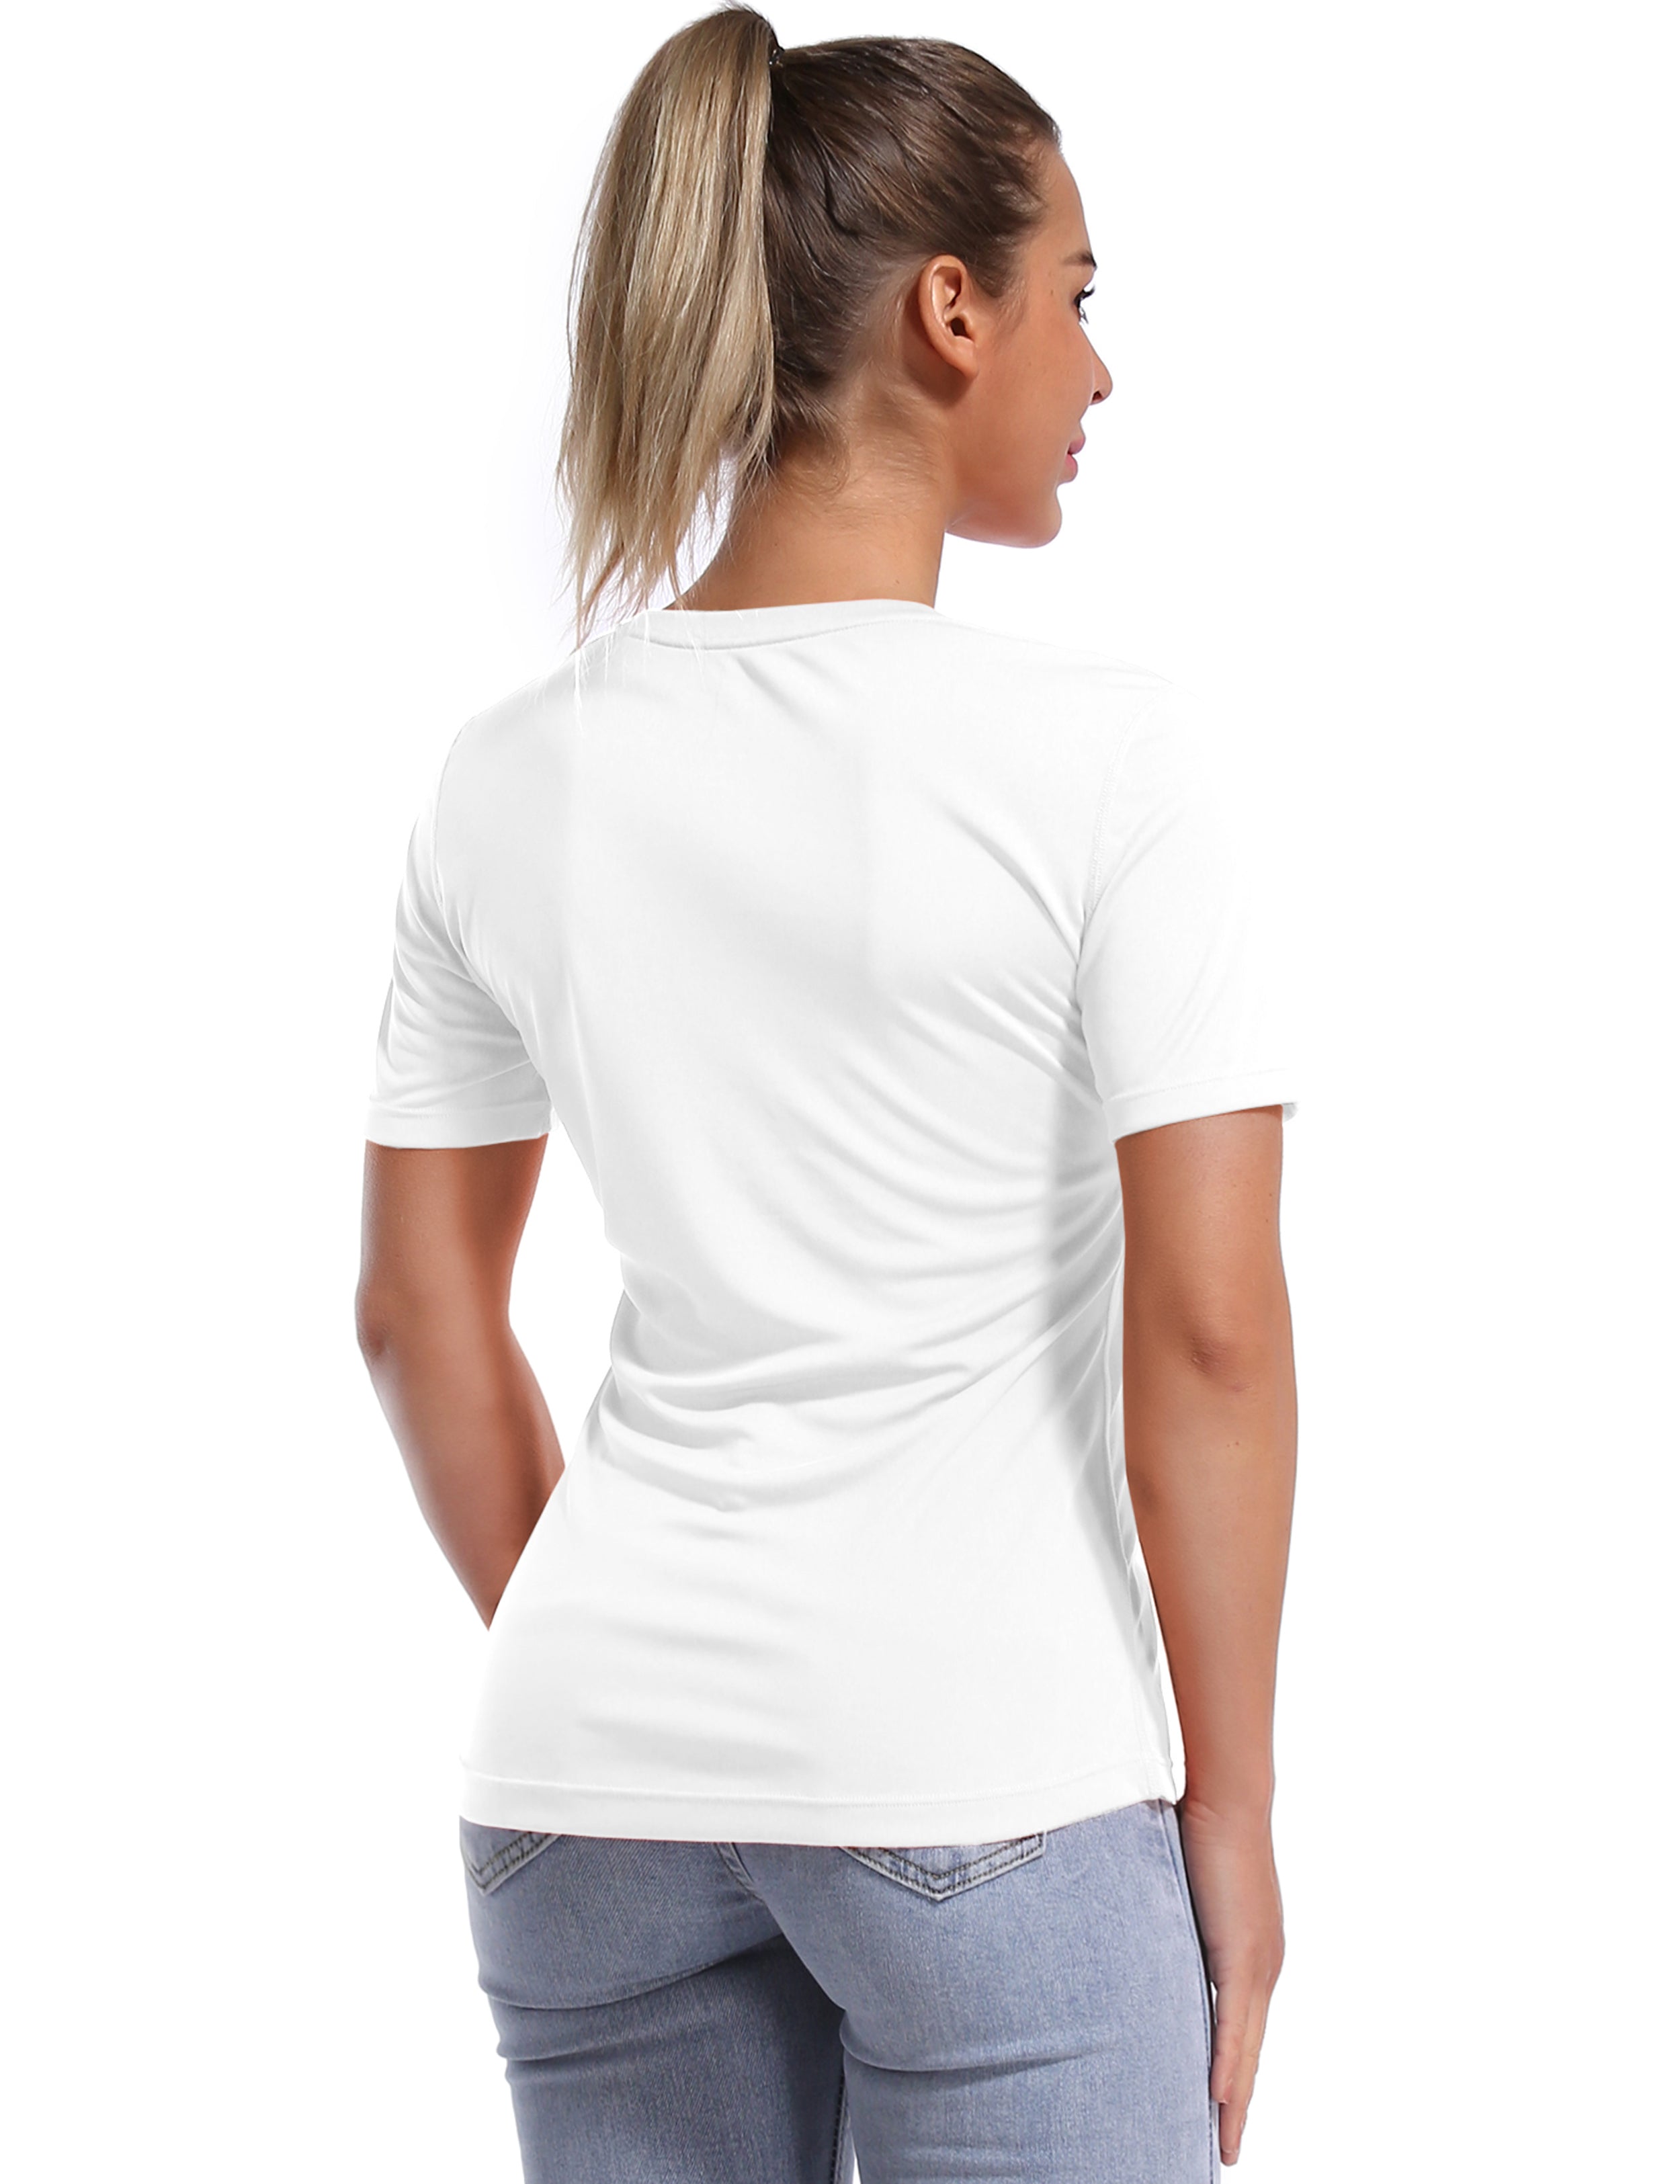 Short Sleeve Athletic Shirts white_Pilates